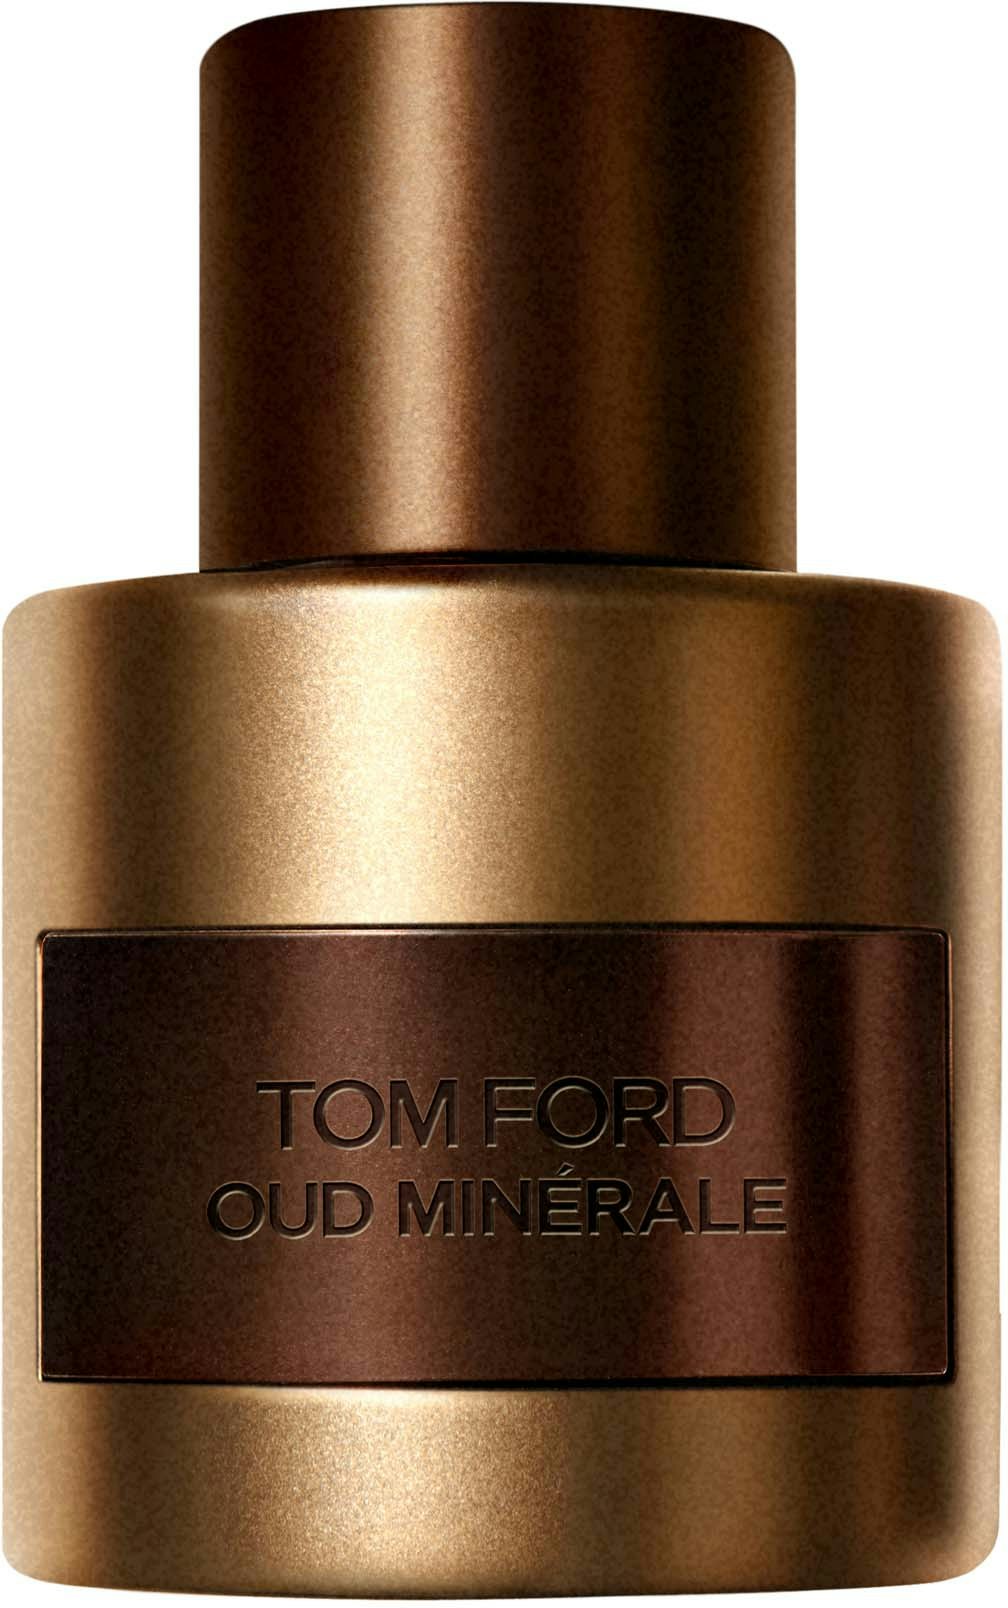 TOM FORD Oud Minérale Eau de Parfum